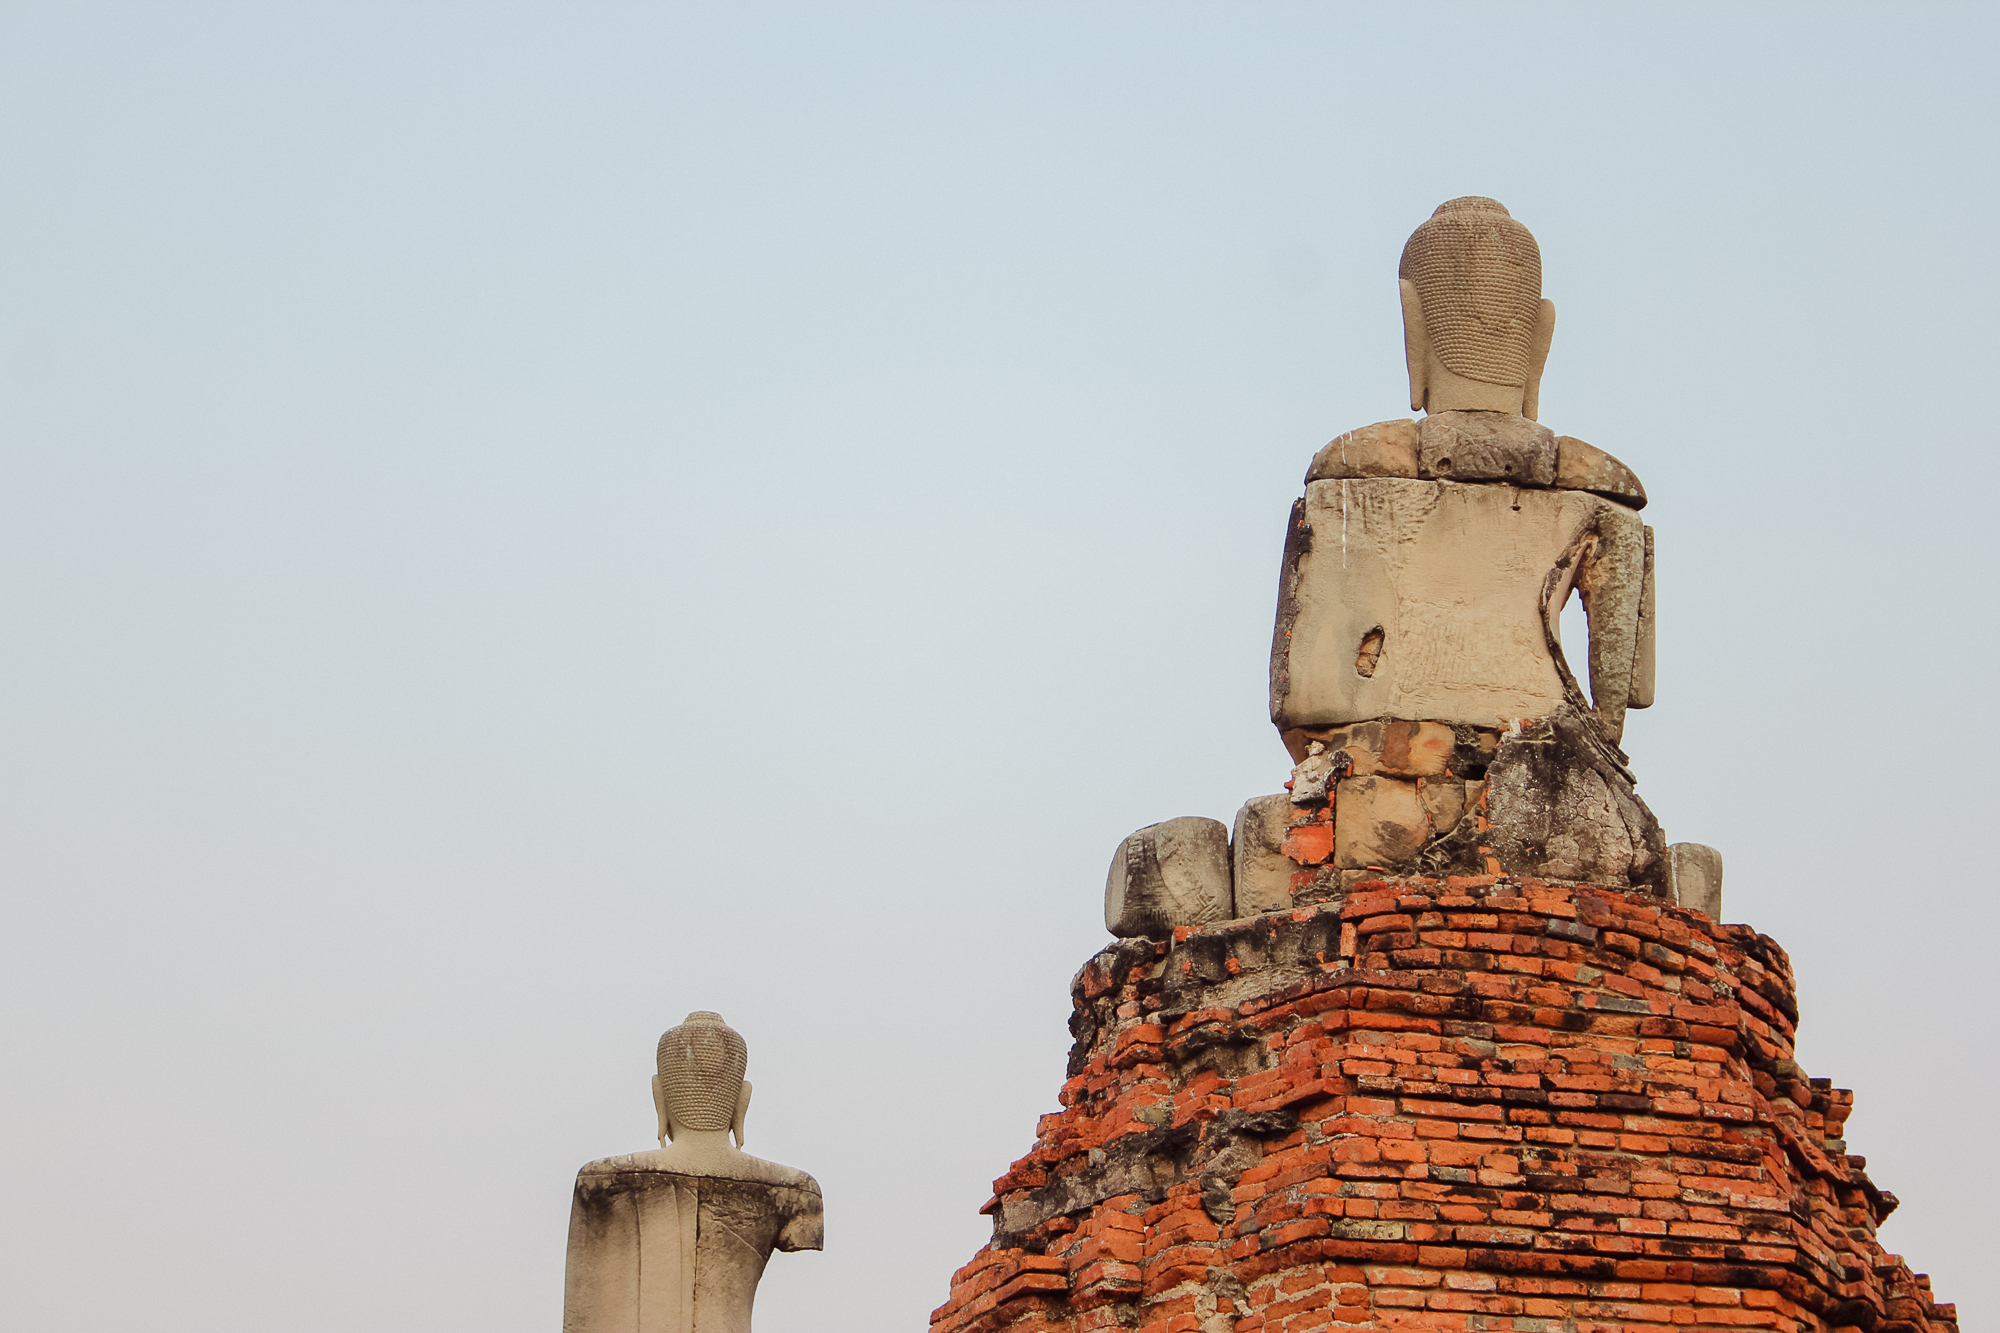 Ayutthaya thailande ville des temples